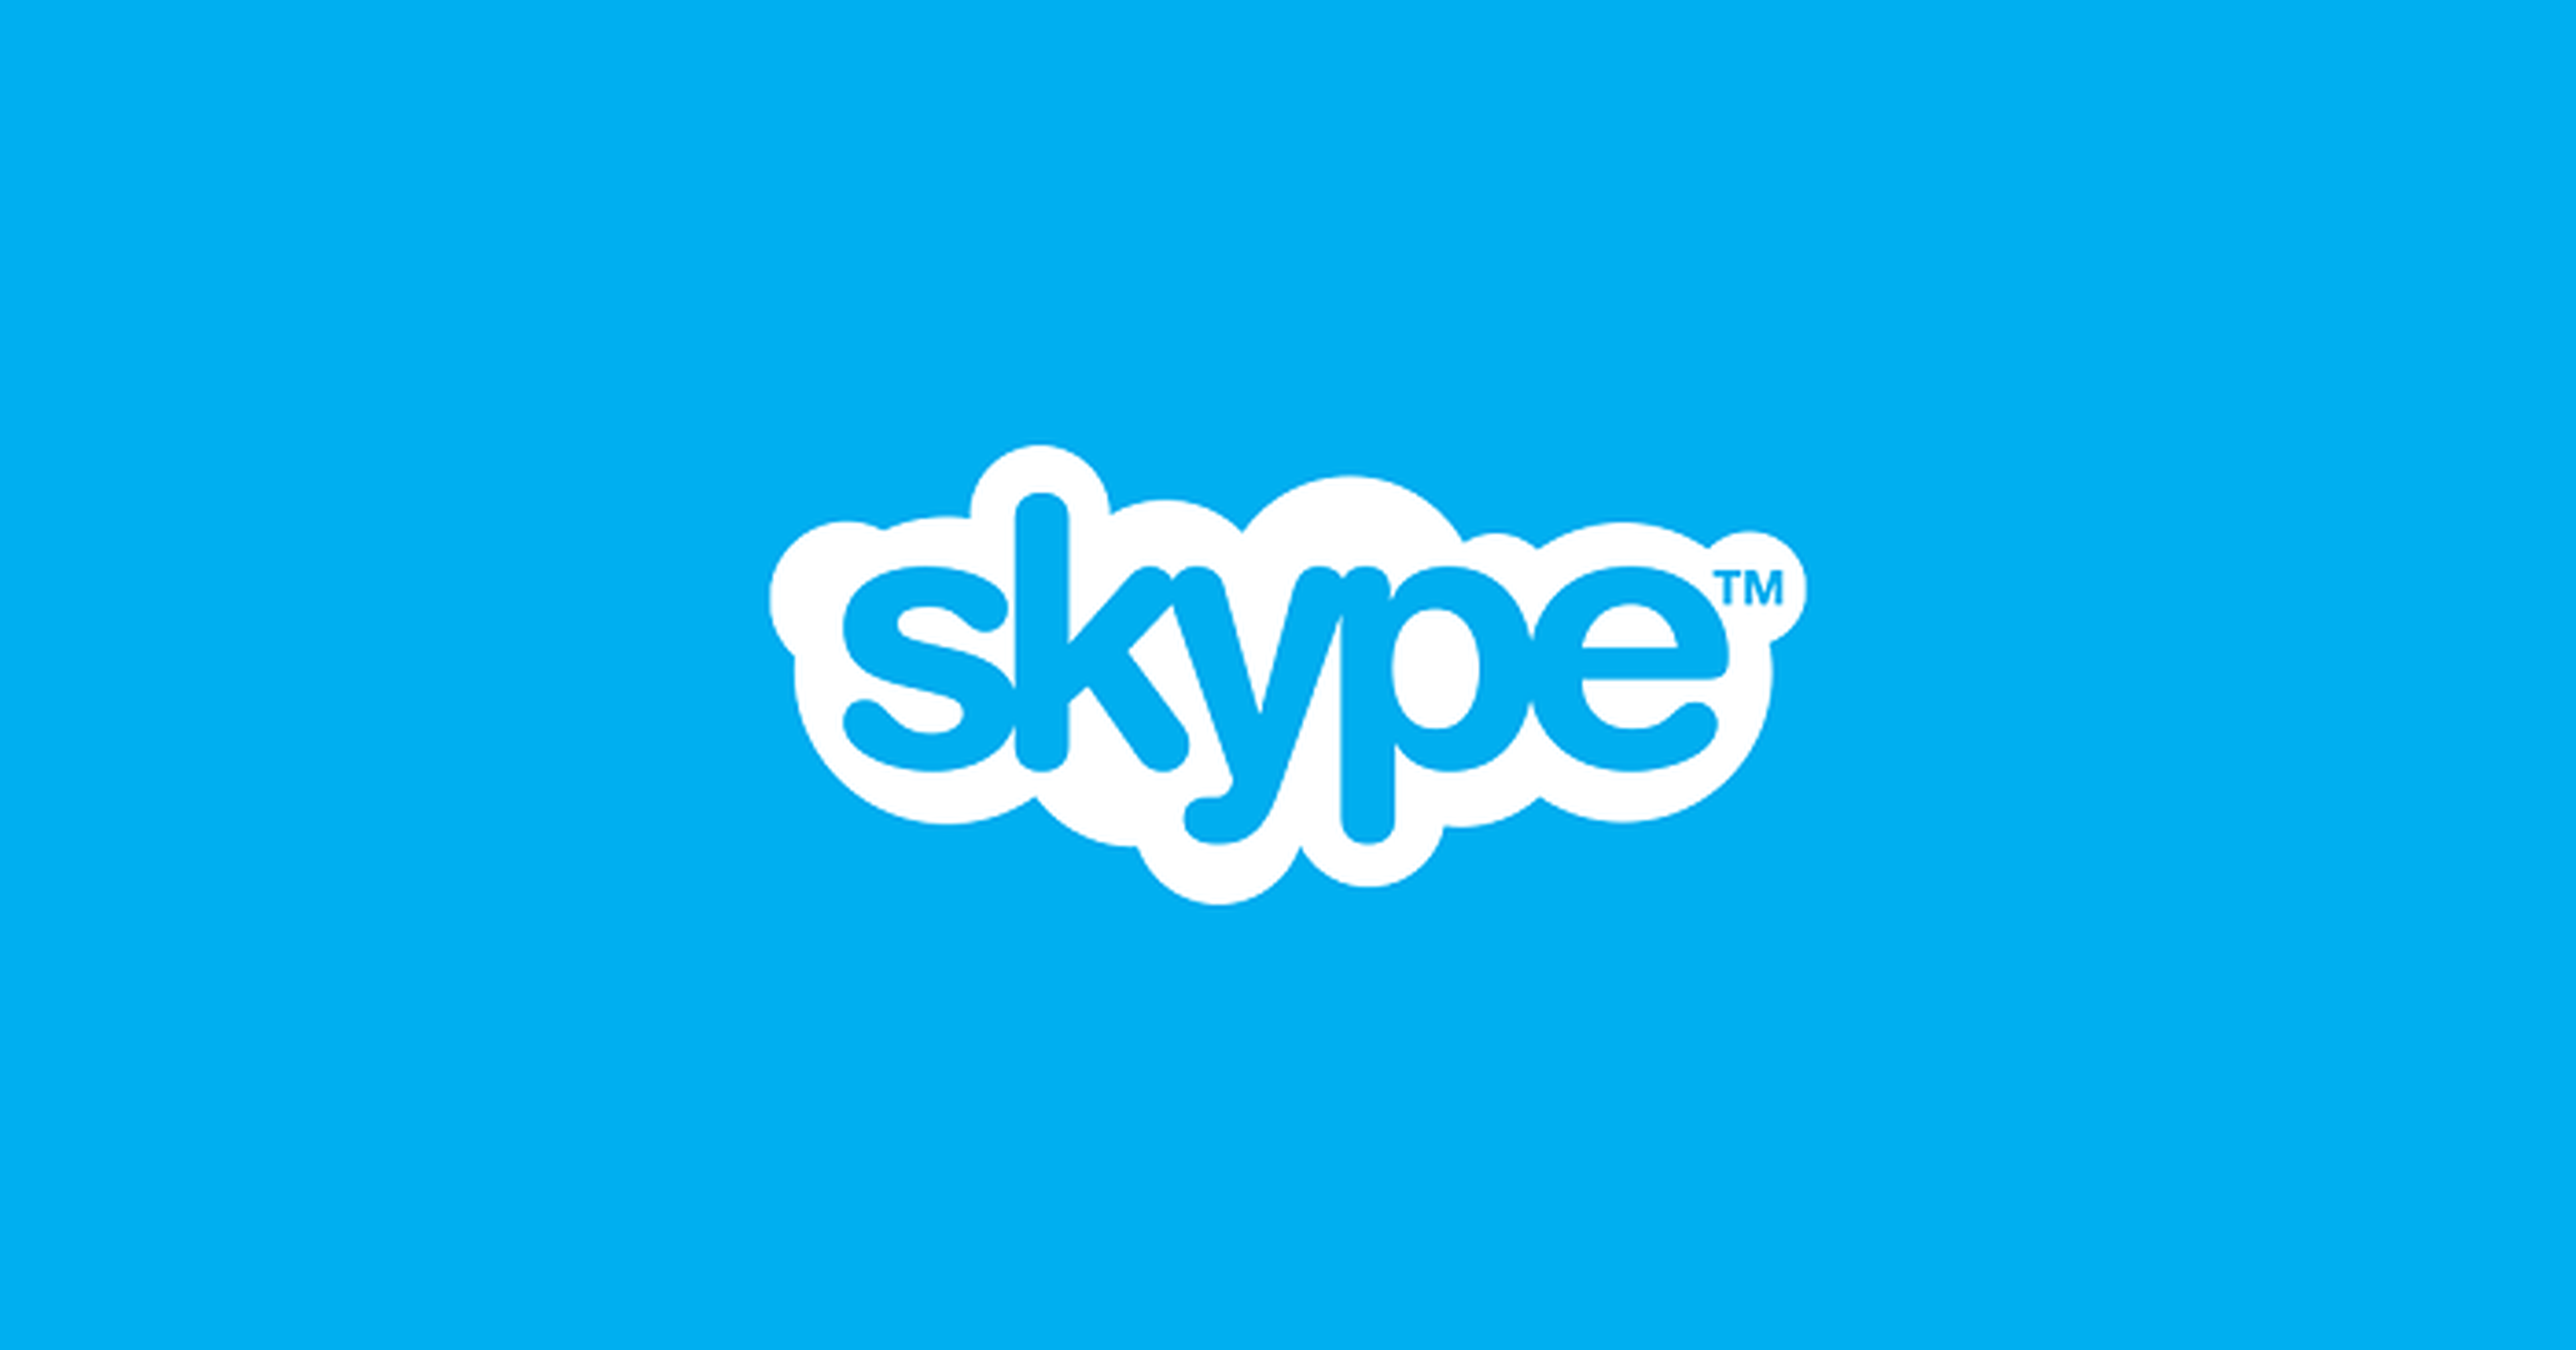 Microsoft skype app mejora chat